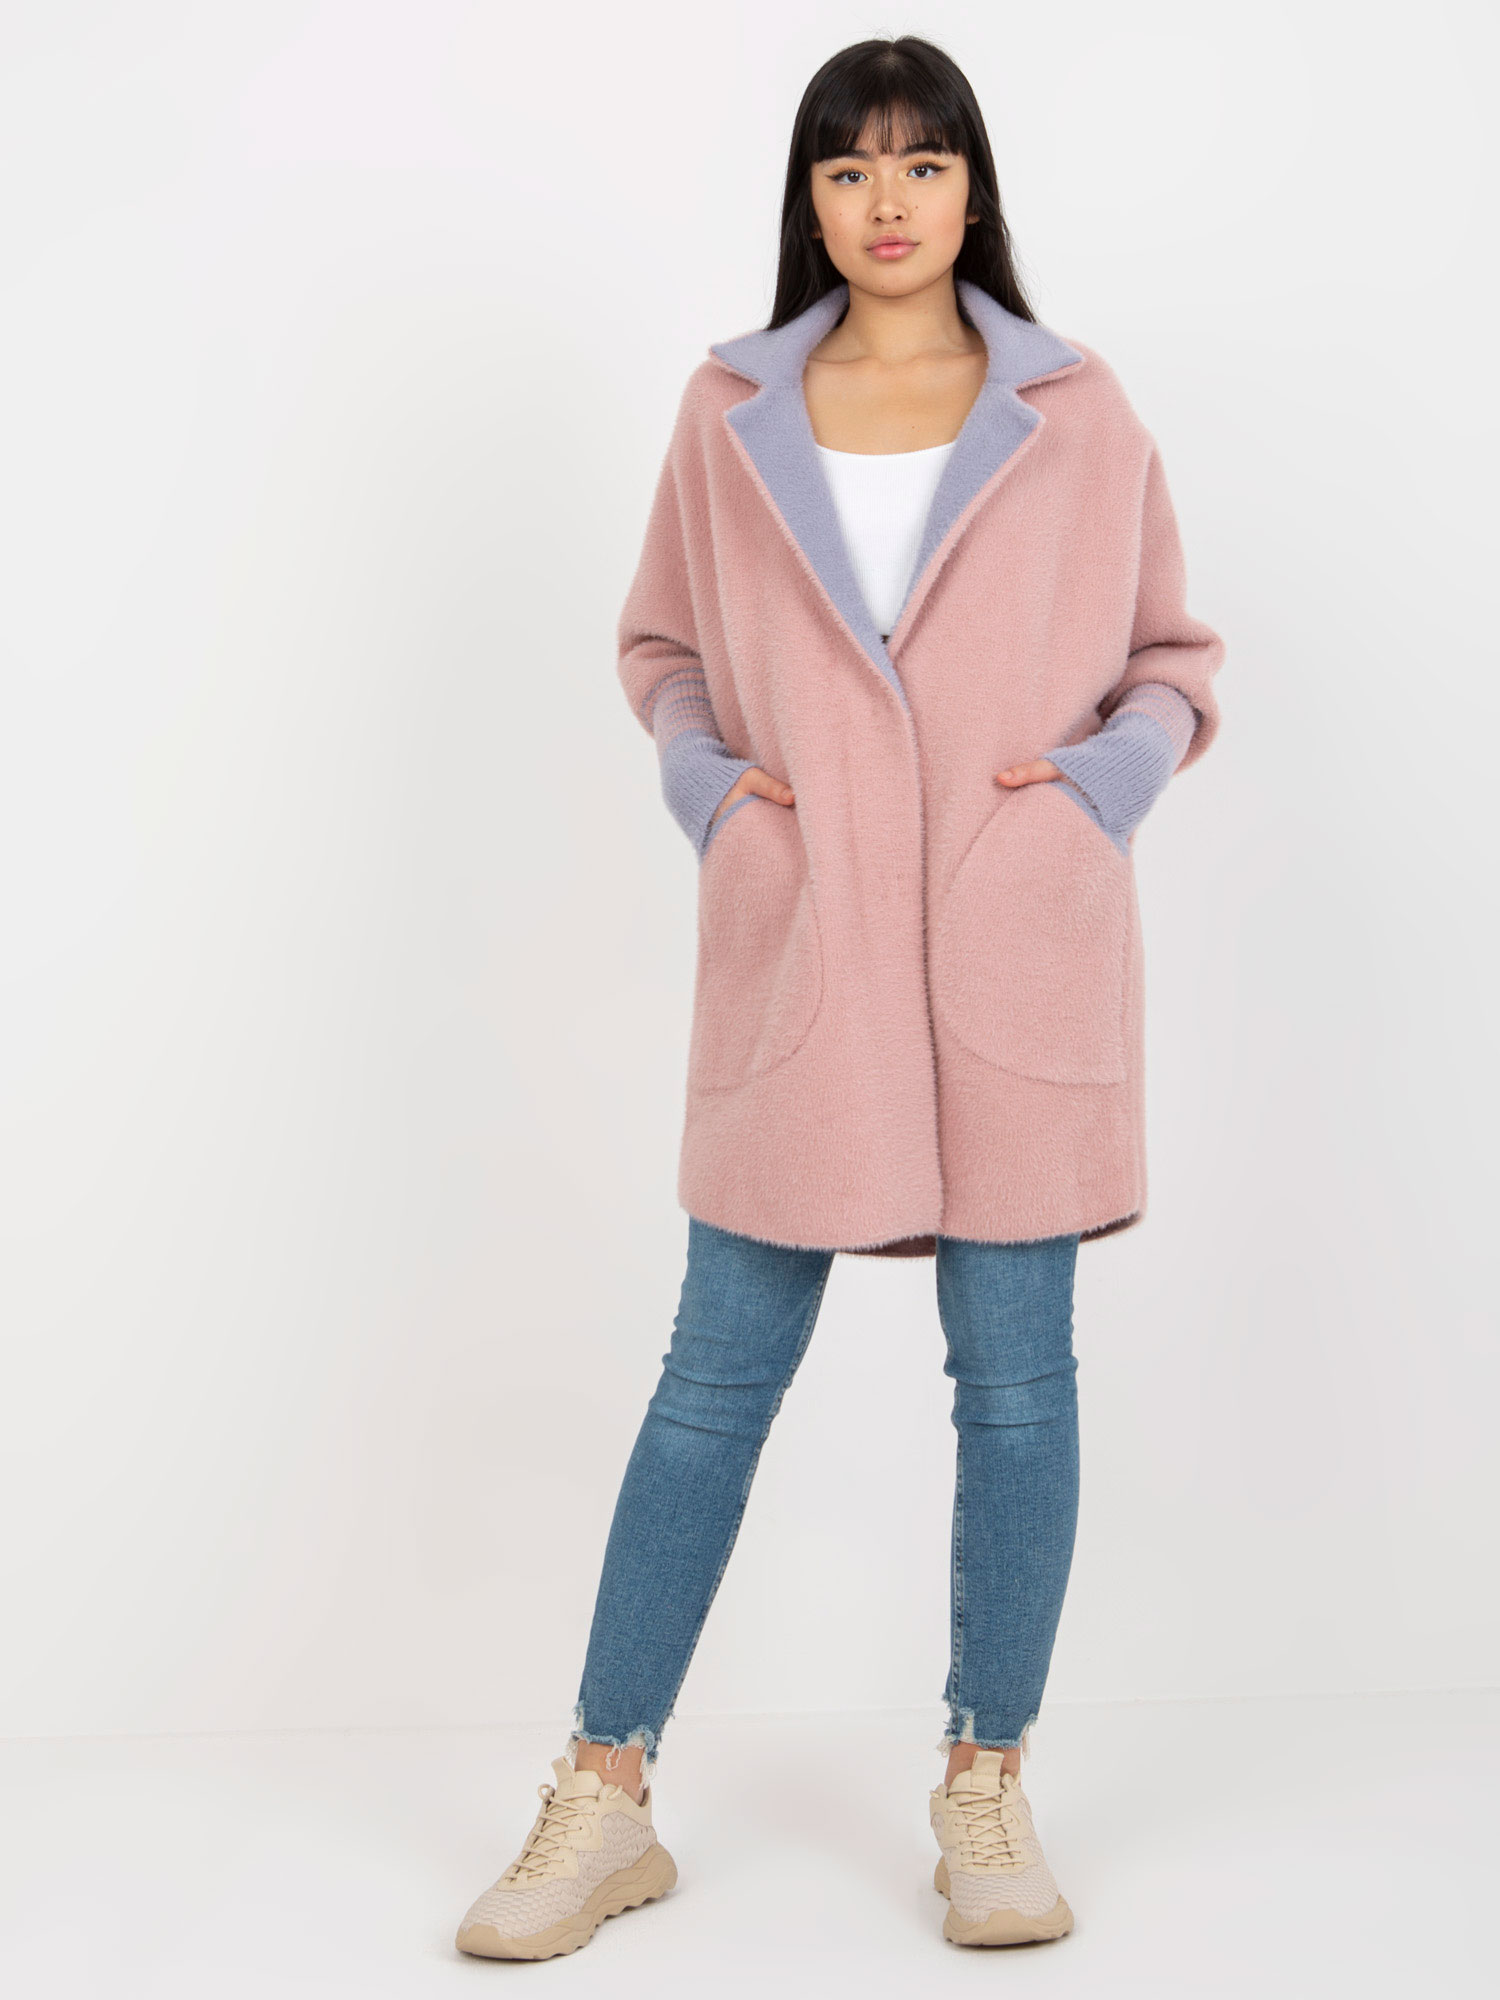 Tmavě růžový kabát s kapsami a límečkem -MBM-PL-2001.95P-dark pink Velikost: ONE SIZE